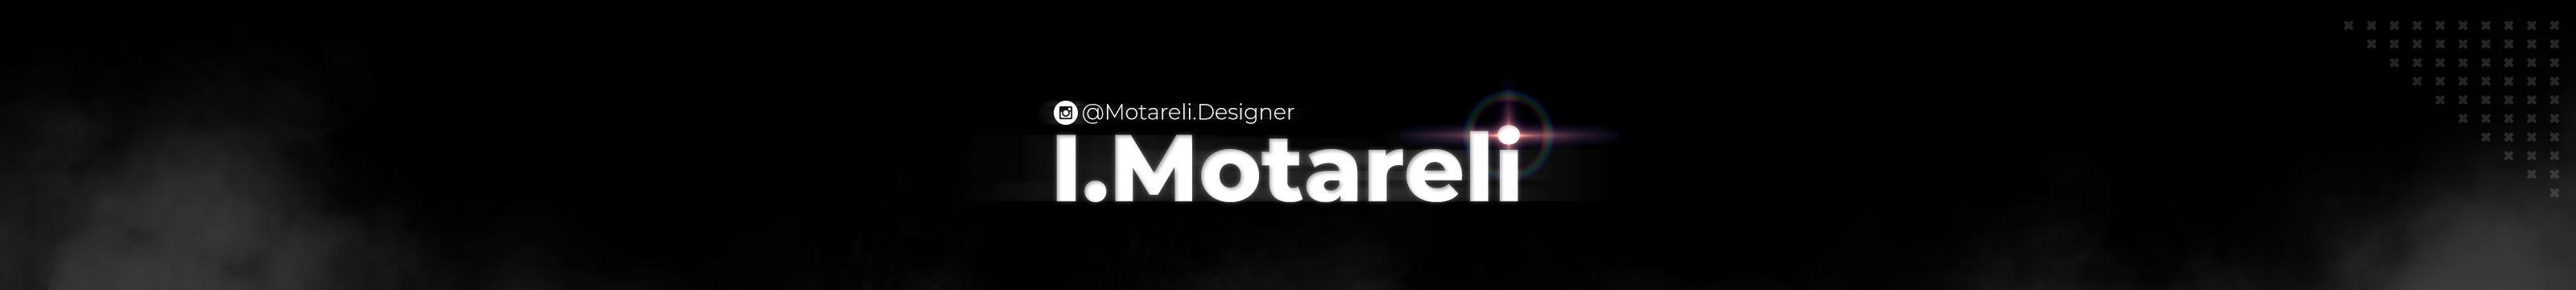 Banner de perfil de Igor Motareli